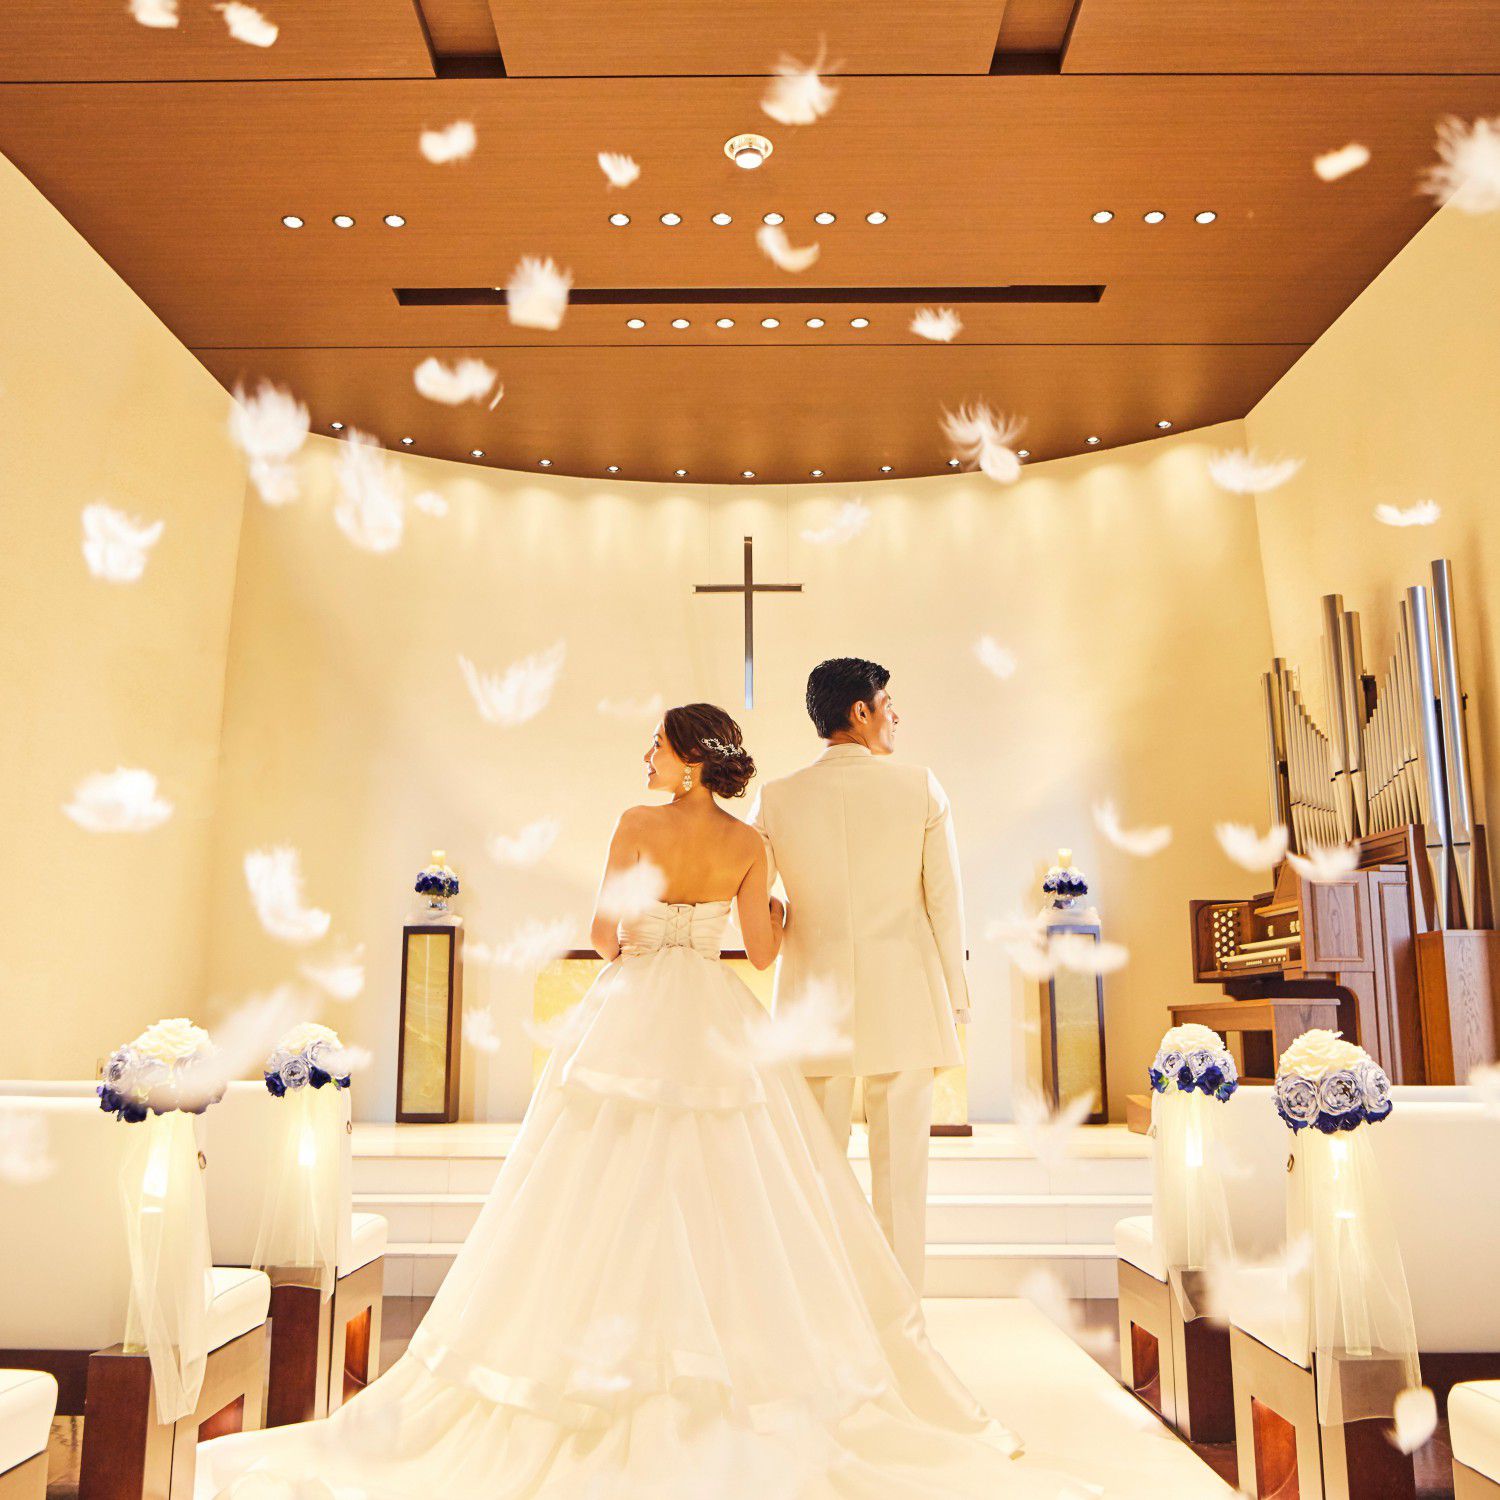 『永遠の愛を誓い、結ばれる瞬間の気持ちを大切にしたい」というカップルに人気の、白を基調とした神聖なチャペルで『結婚式の本質』を大切にしたセレモニーを。天からそっと舞い降りる天使の羽根にも注目を